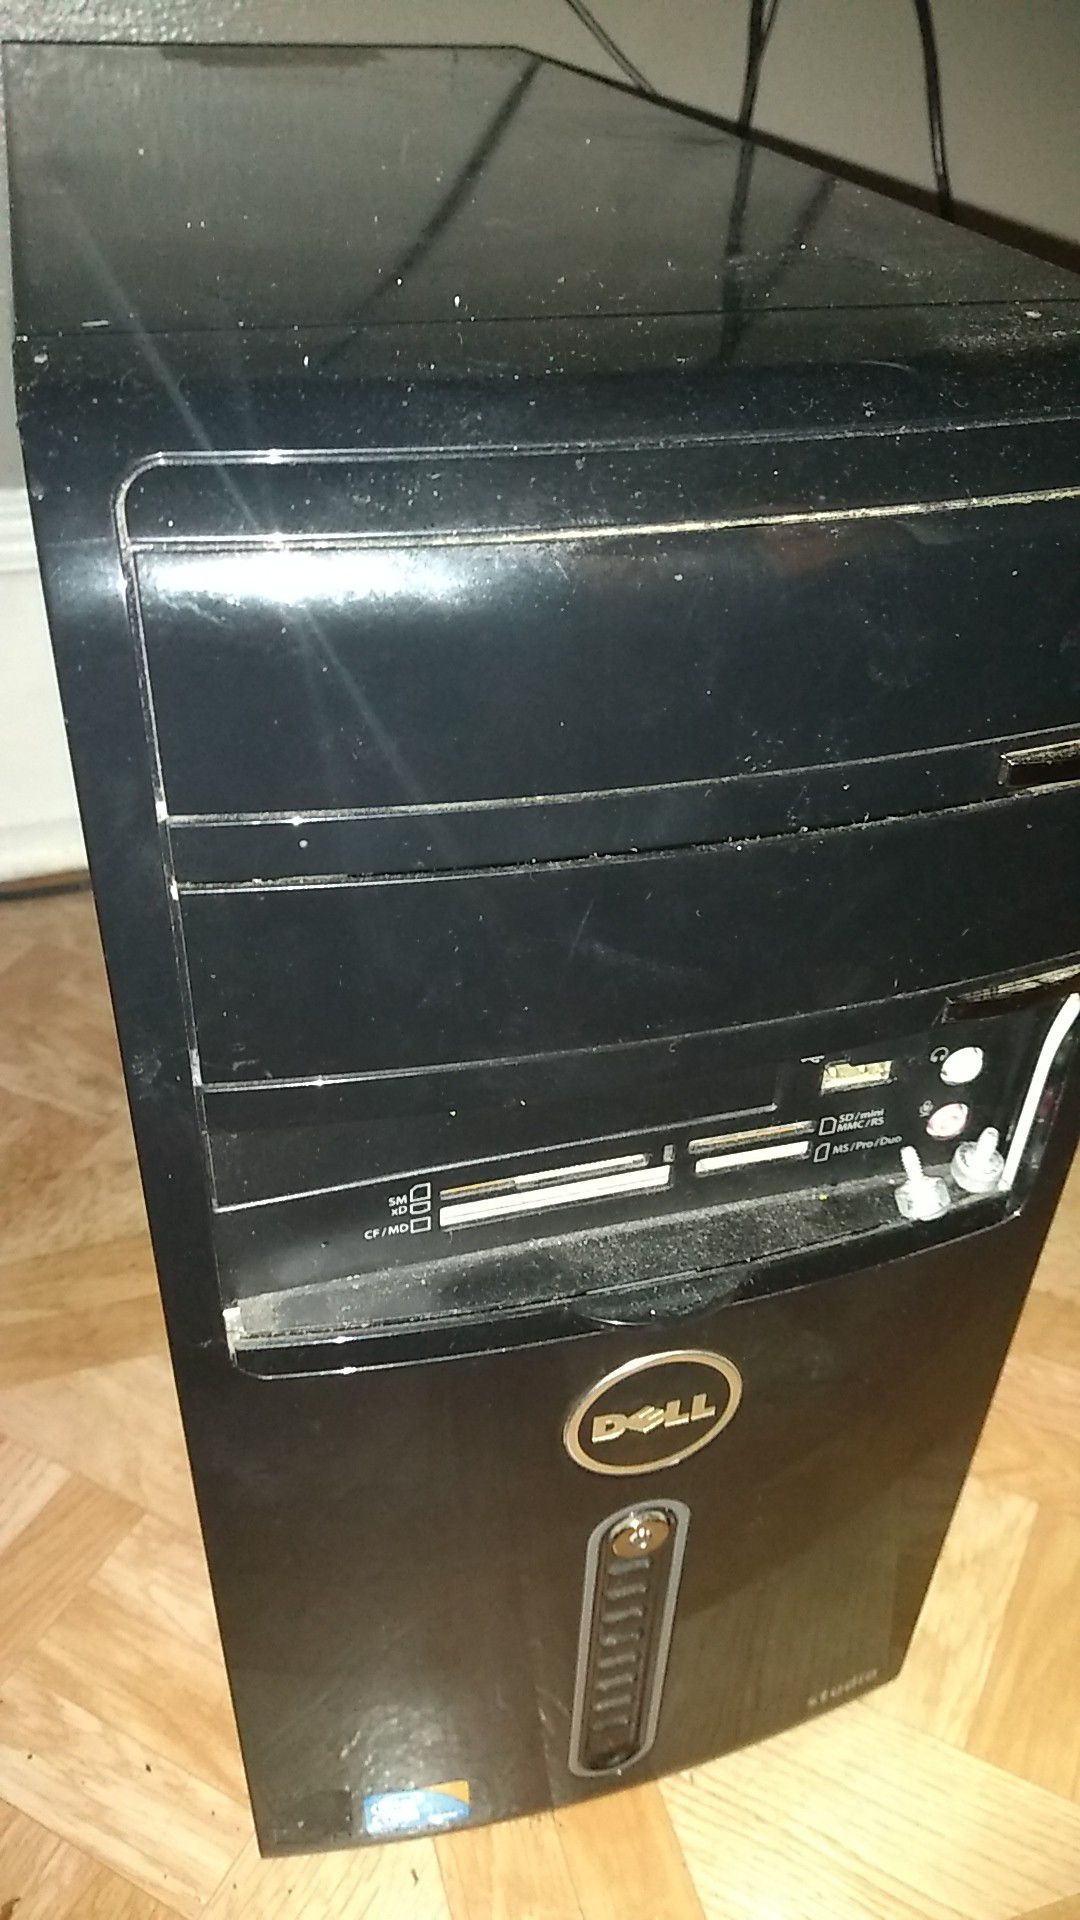 Dell computer $20 runs perfect